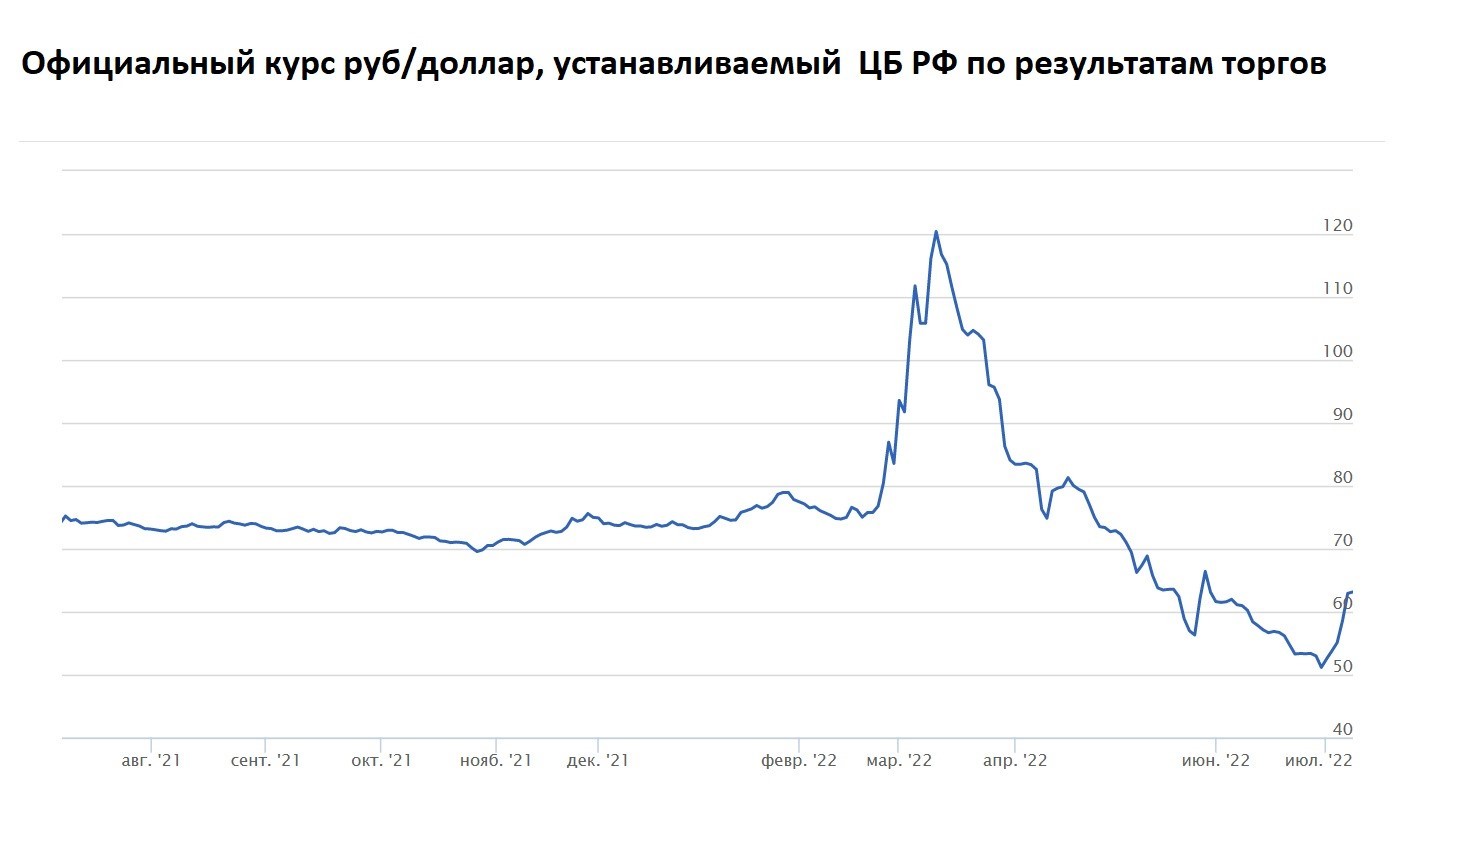 Рис. 1. Официальный курс рубля, август 2021 – июль 2022. Источник: 1prime.ru